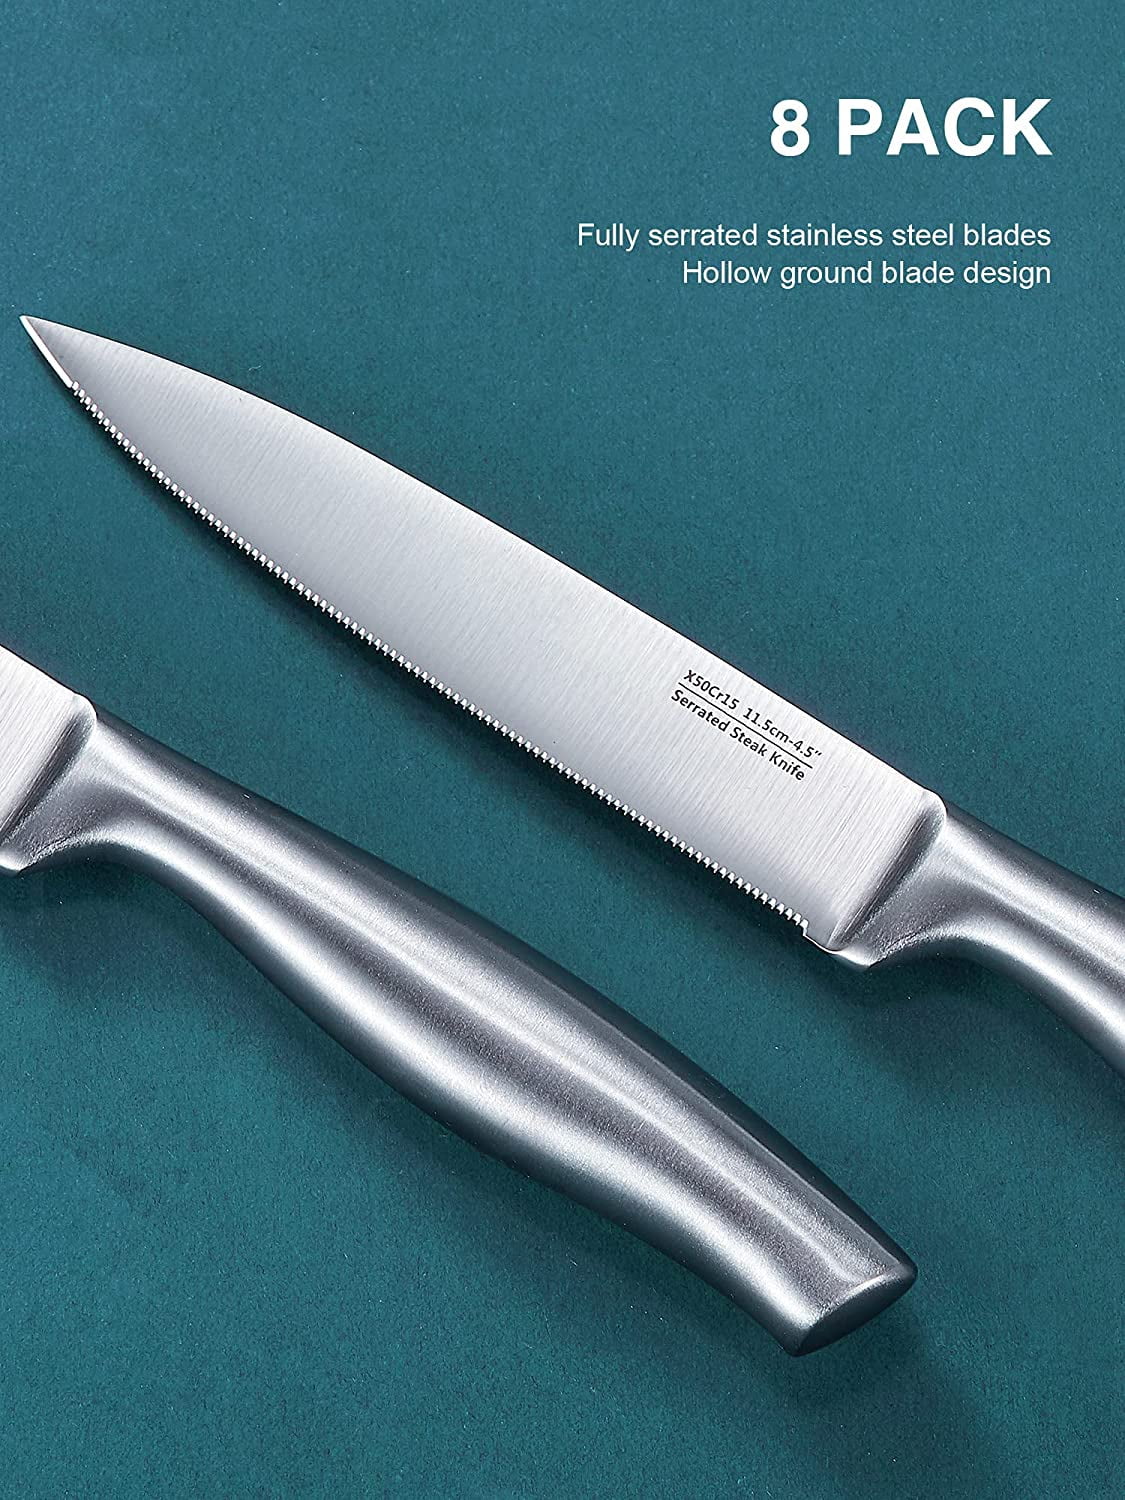 Aiheal Serrated Steak Knife Set, Stainless Steel Steak Knives Set of 8, Never Needs Sharpening Dinner Knives, Micro Serrated Steak Knives with Gift